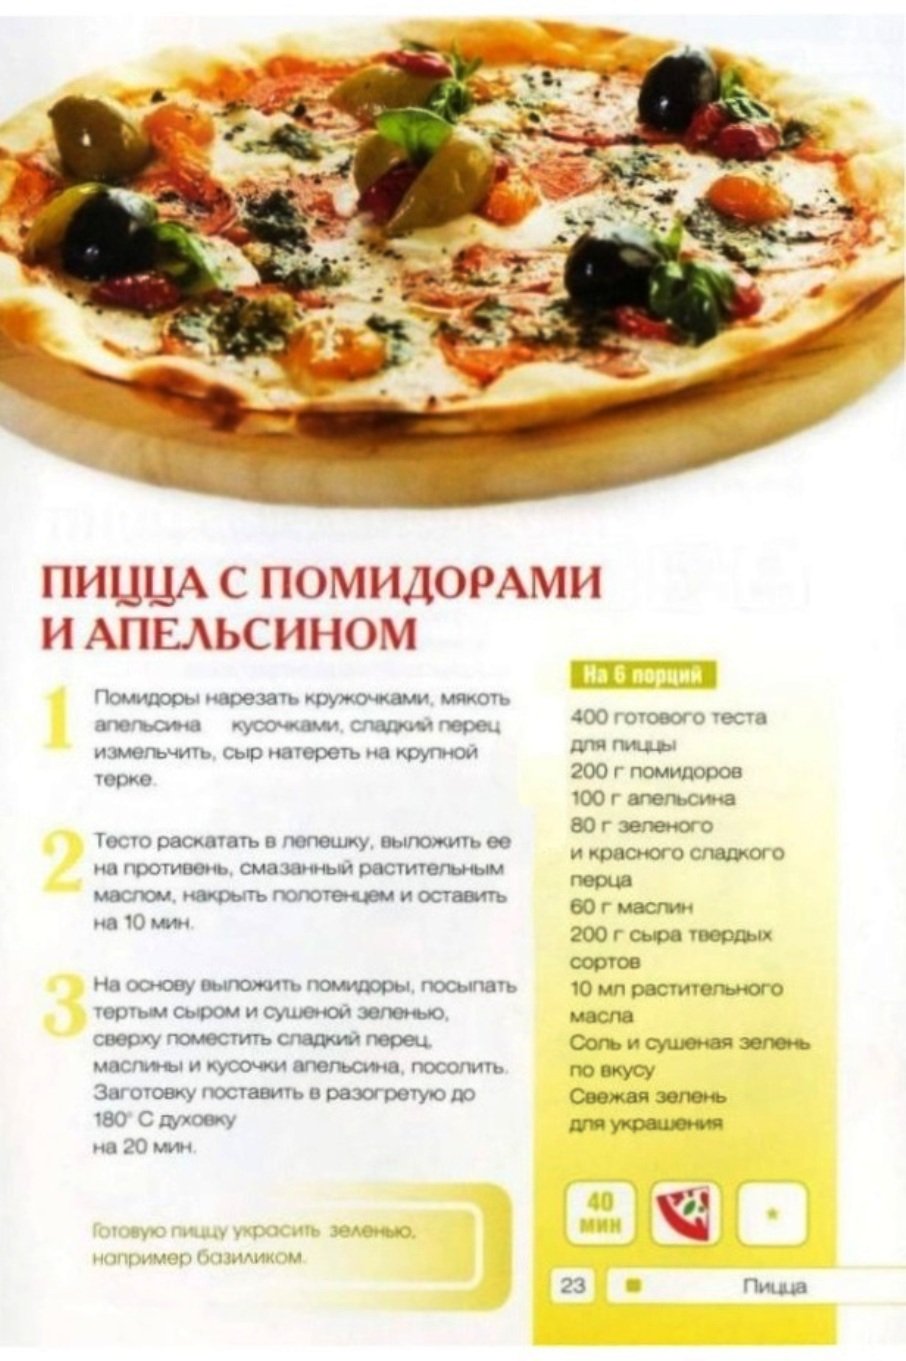 рецепты пиццы картинки фото 15